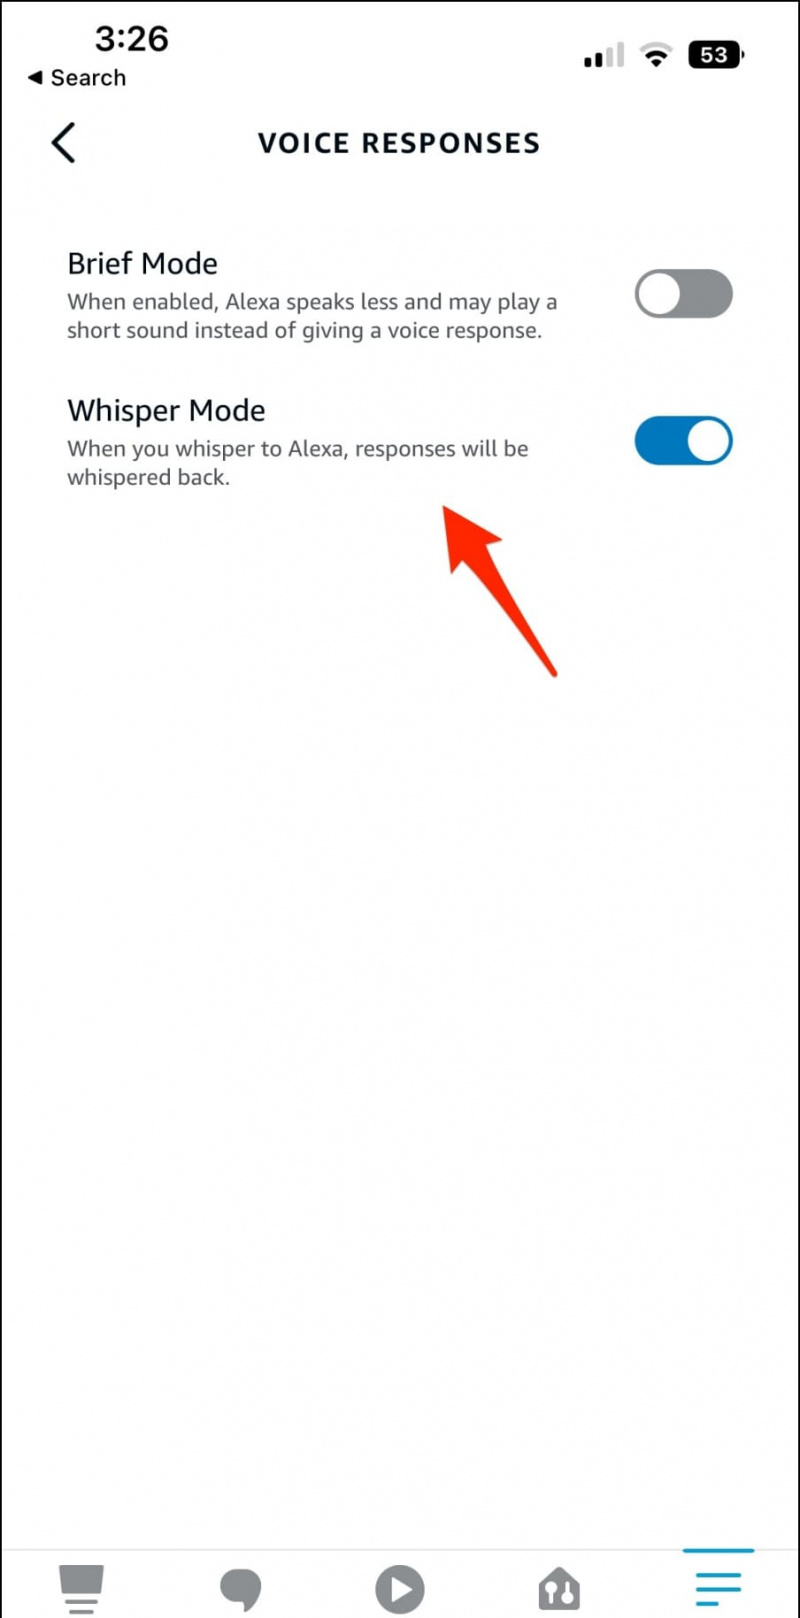   Ενεργοποιήστε τη λειτουργία Whisper στο Echo Alexa